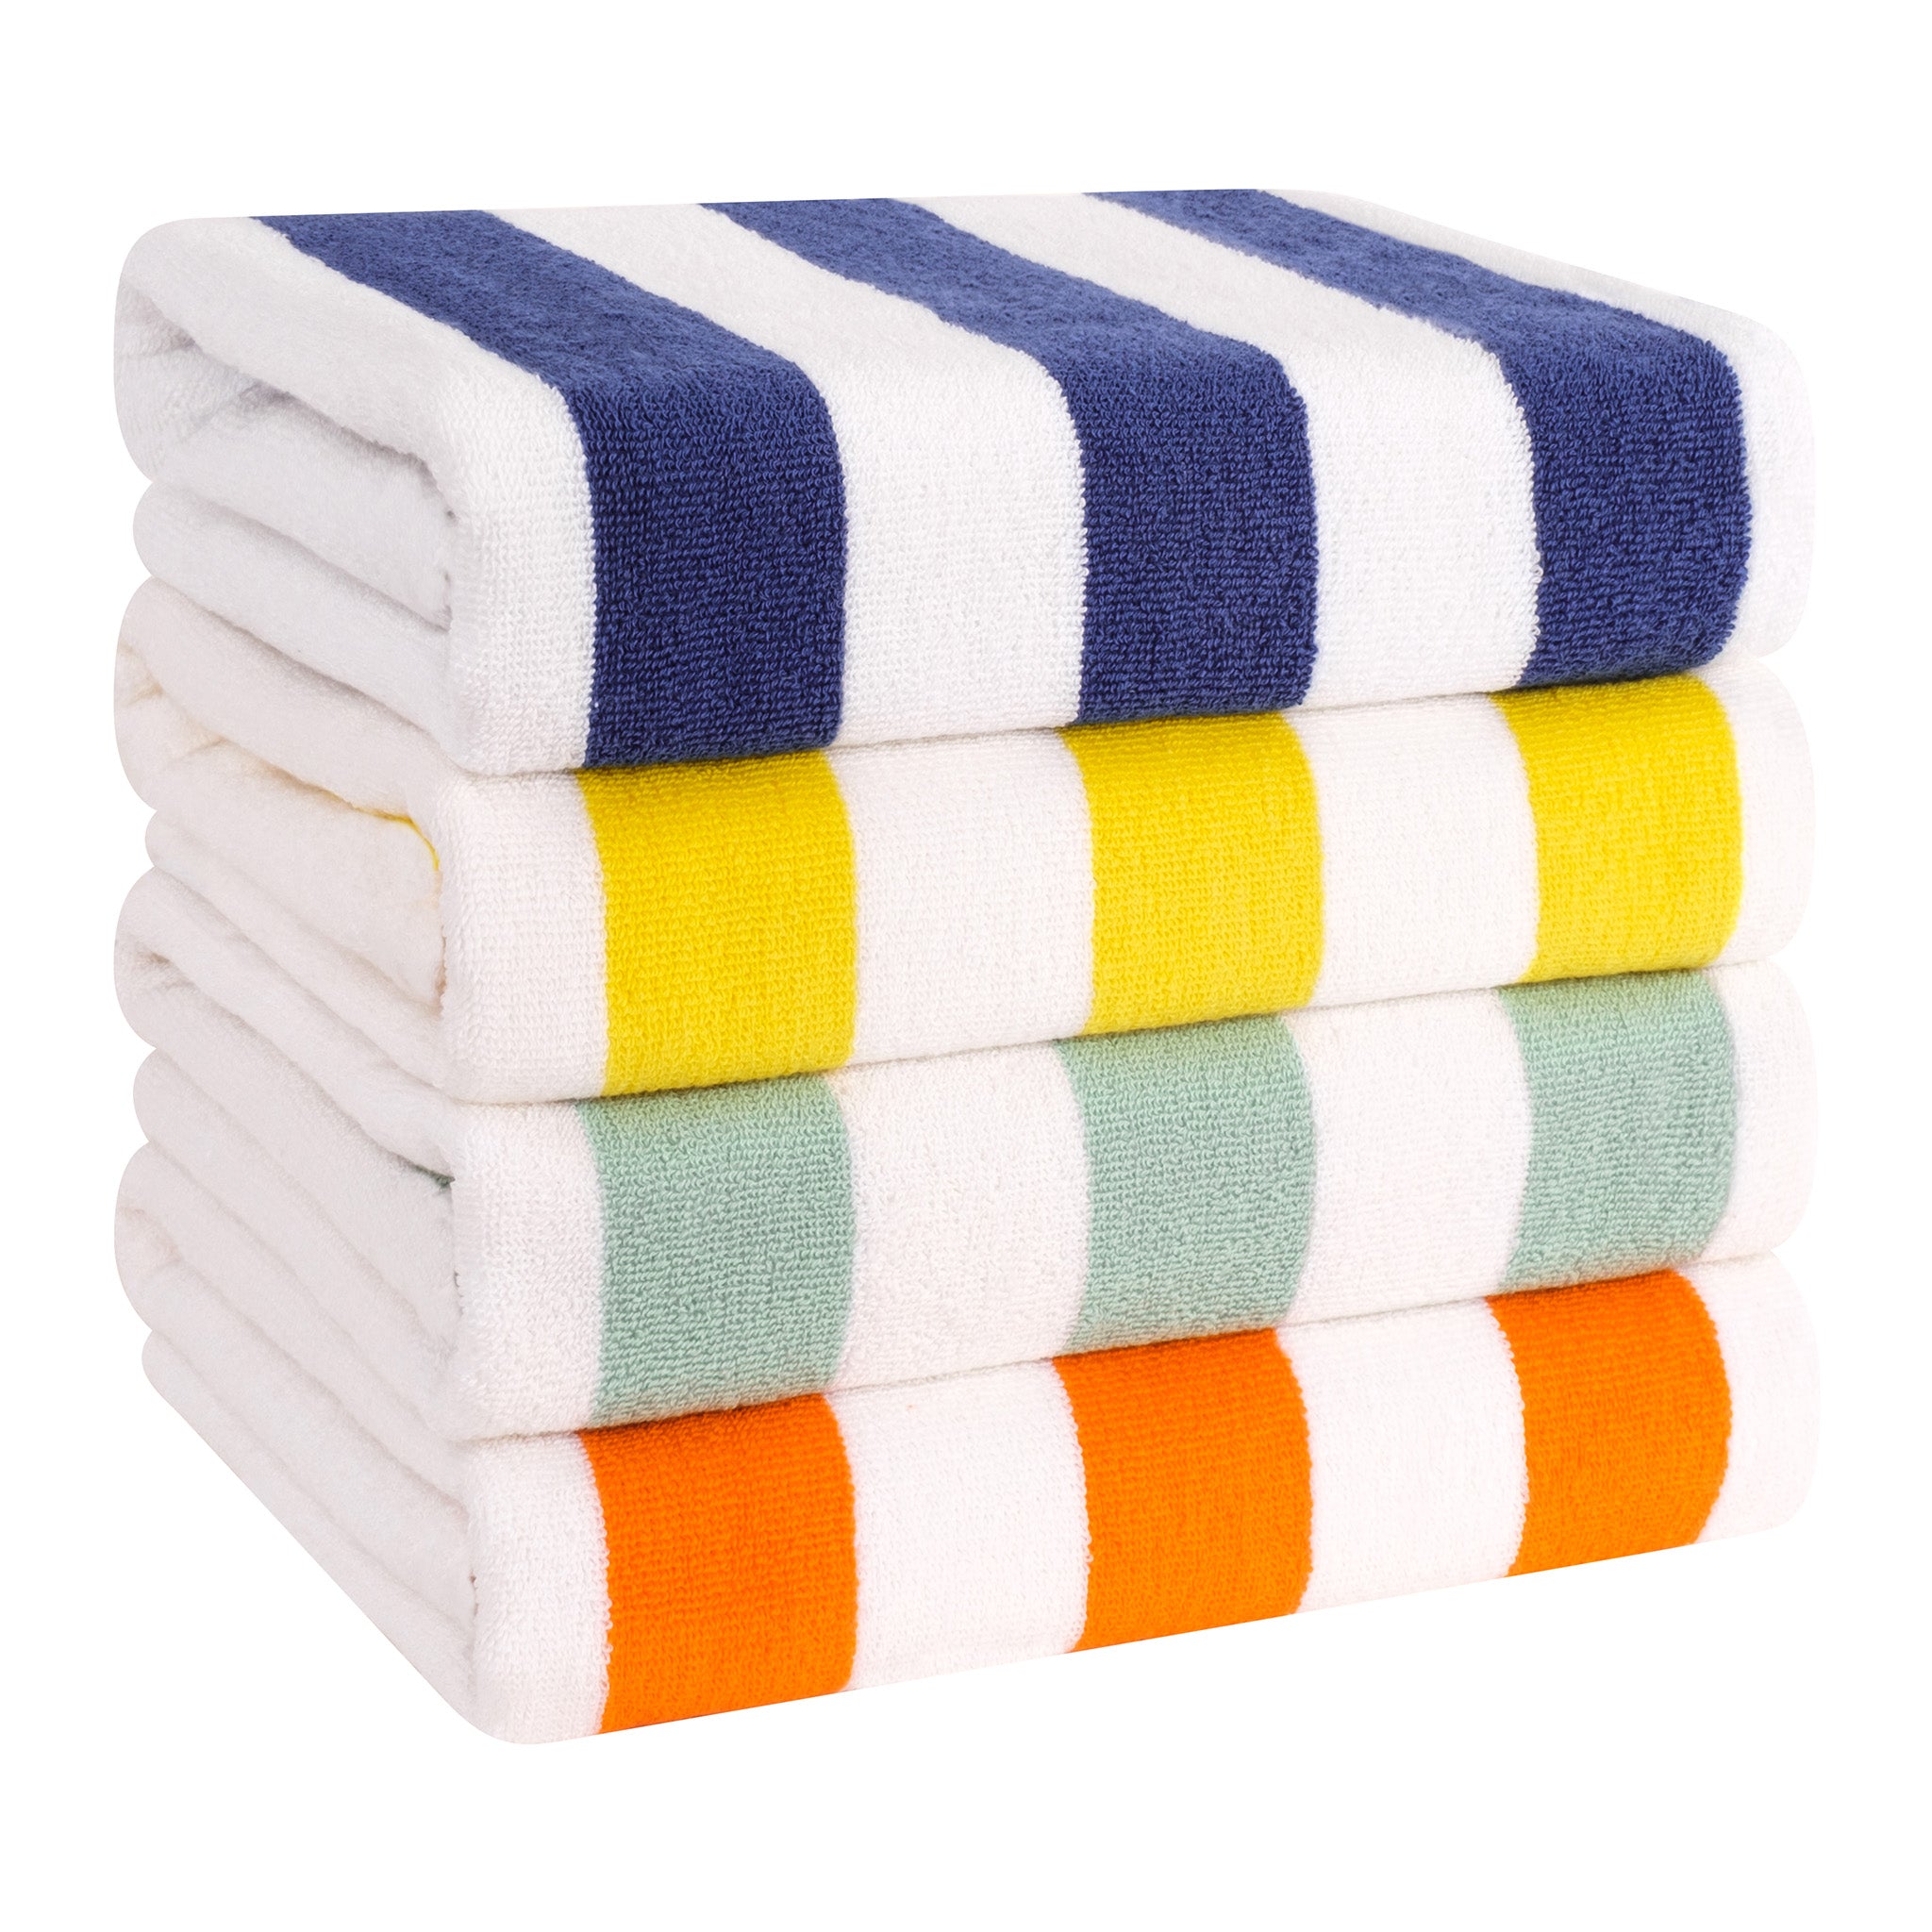 http://americansoftlinen.com/cdn/shop/files/american-soft-linen-cabana-striped-4-pack-cotton-beach-towels-30x60-mix-1.jpg?v=1702899225&width=2048